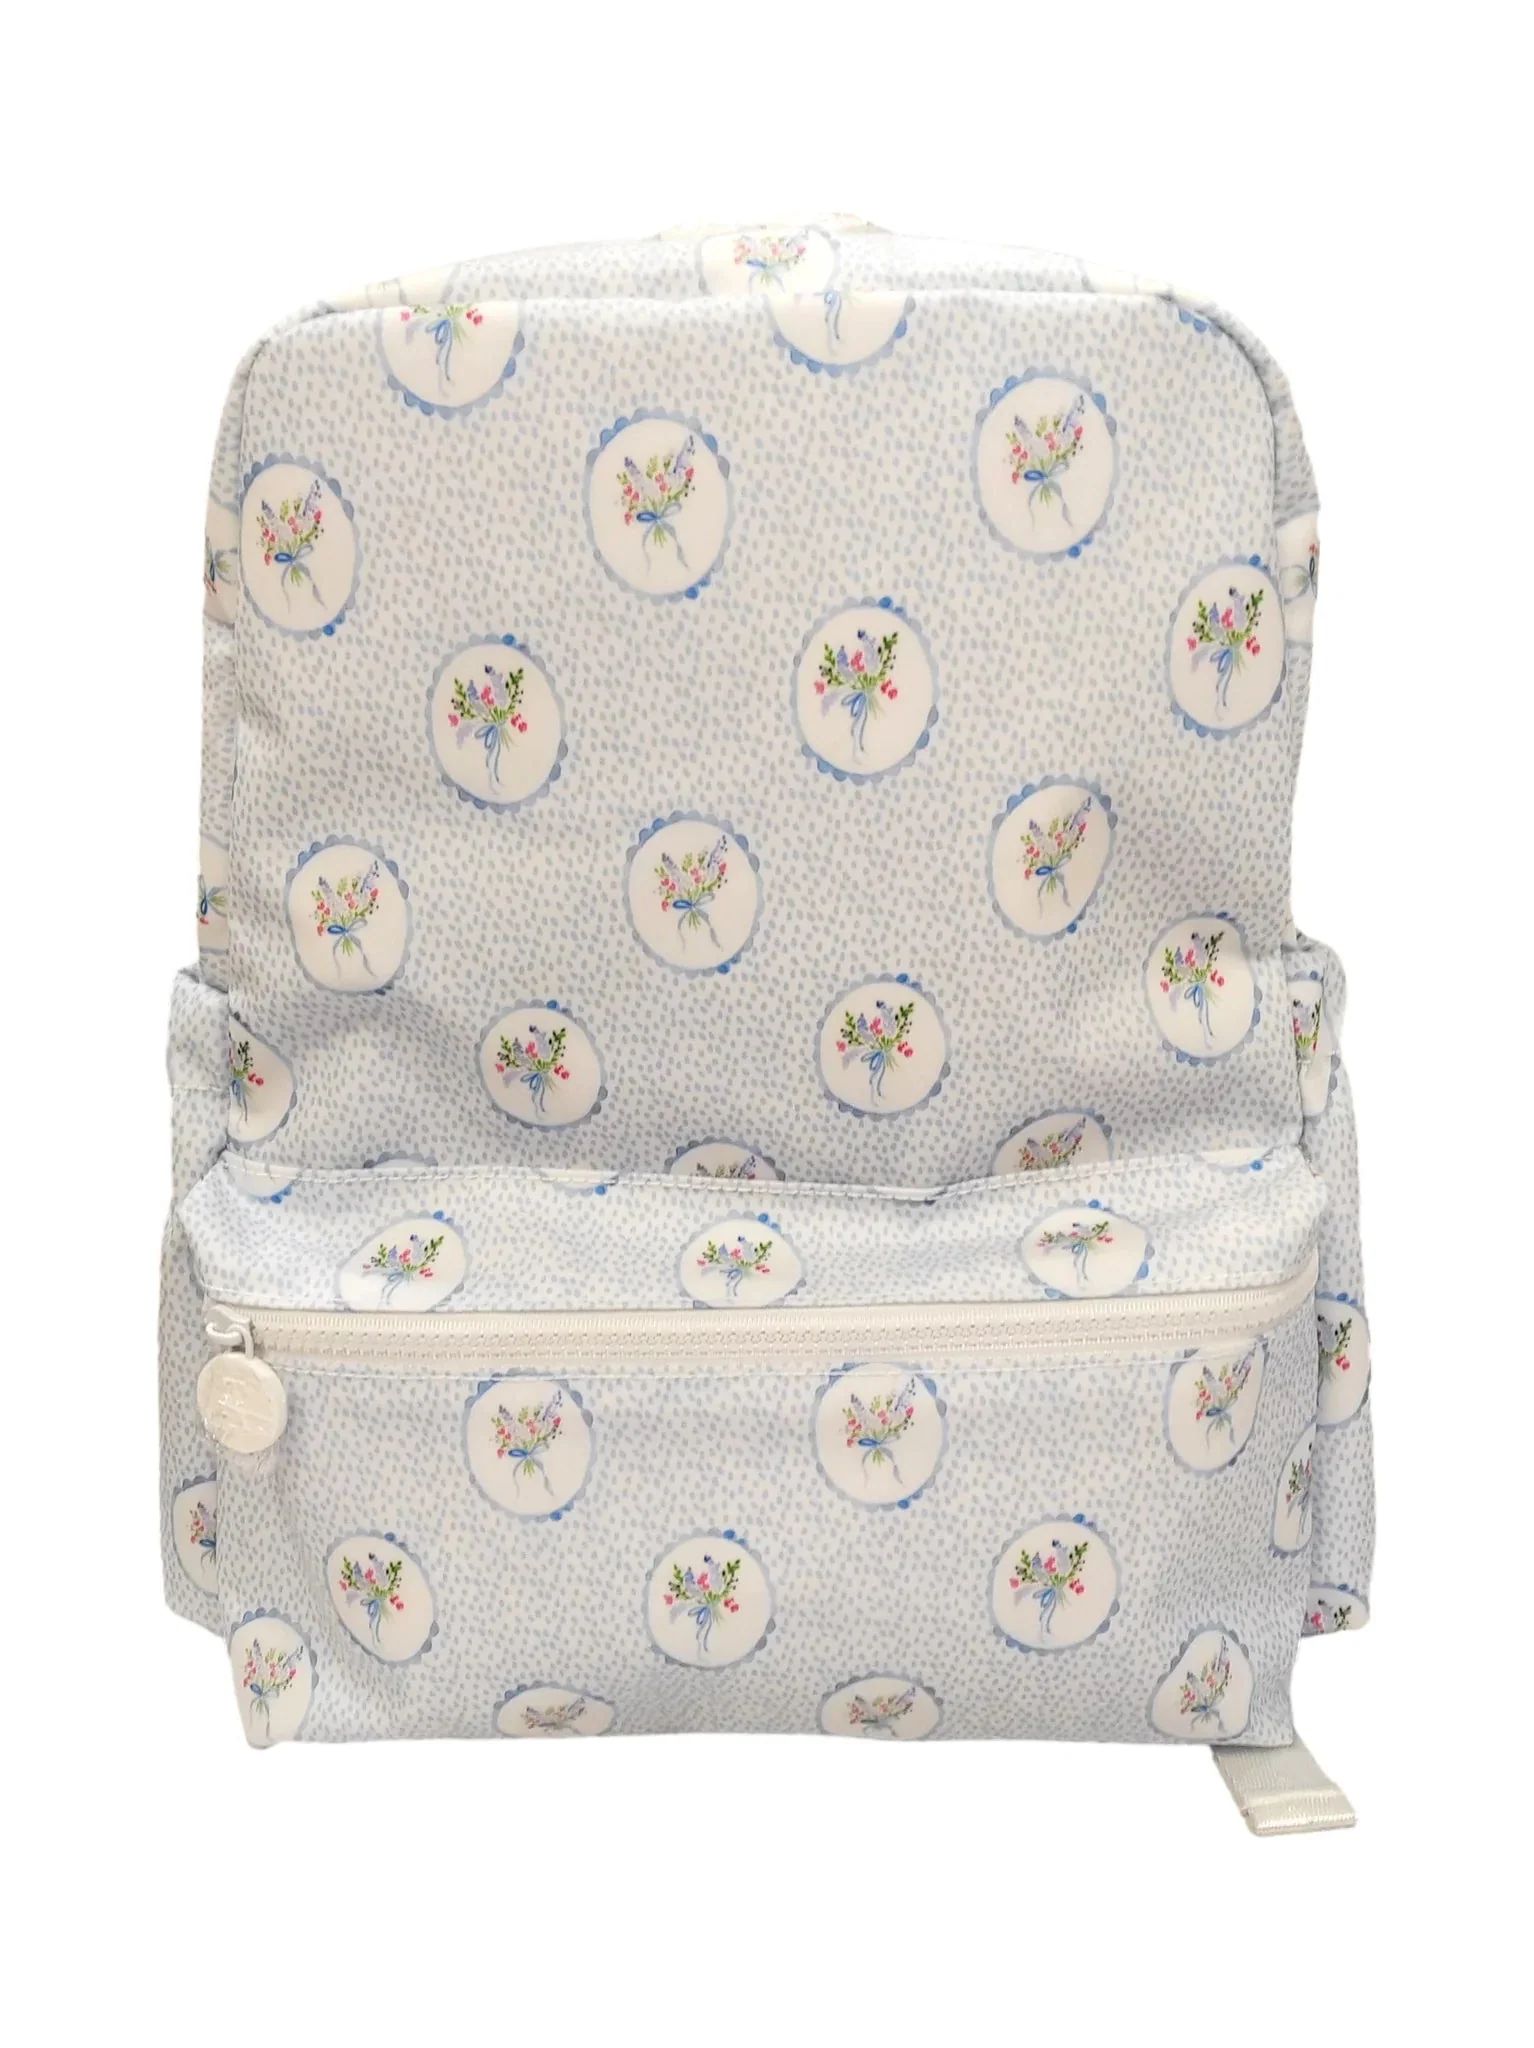 TRVL Design Backpacker - Floral Medallion Blue | JoJo Mommy